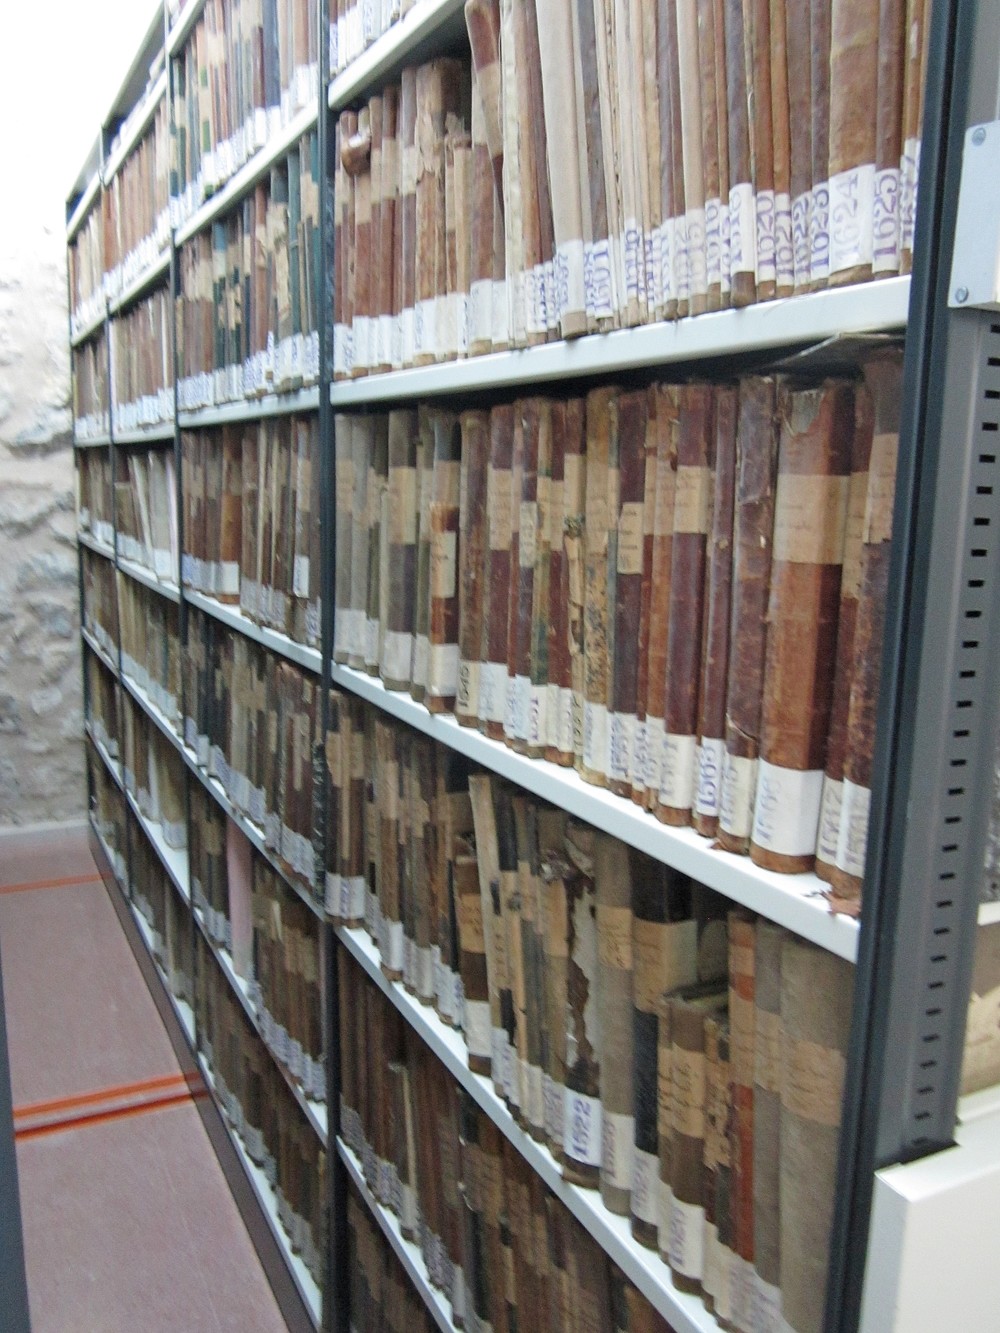 Libros de Hacienda de 1823-1970, 'tesoro oculto' del Archivo